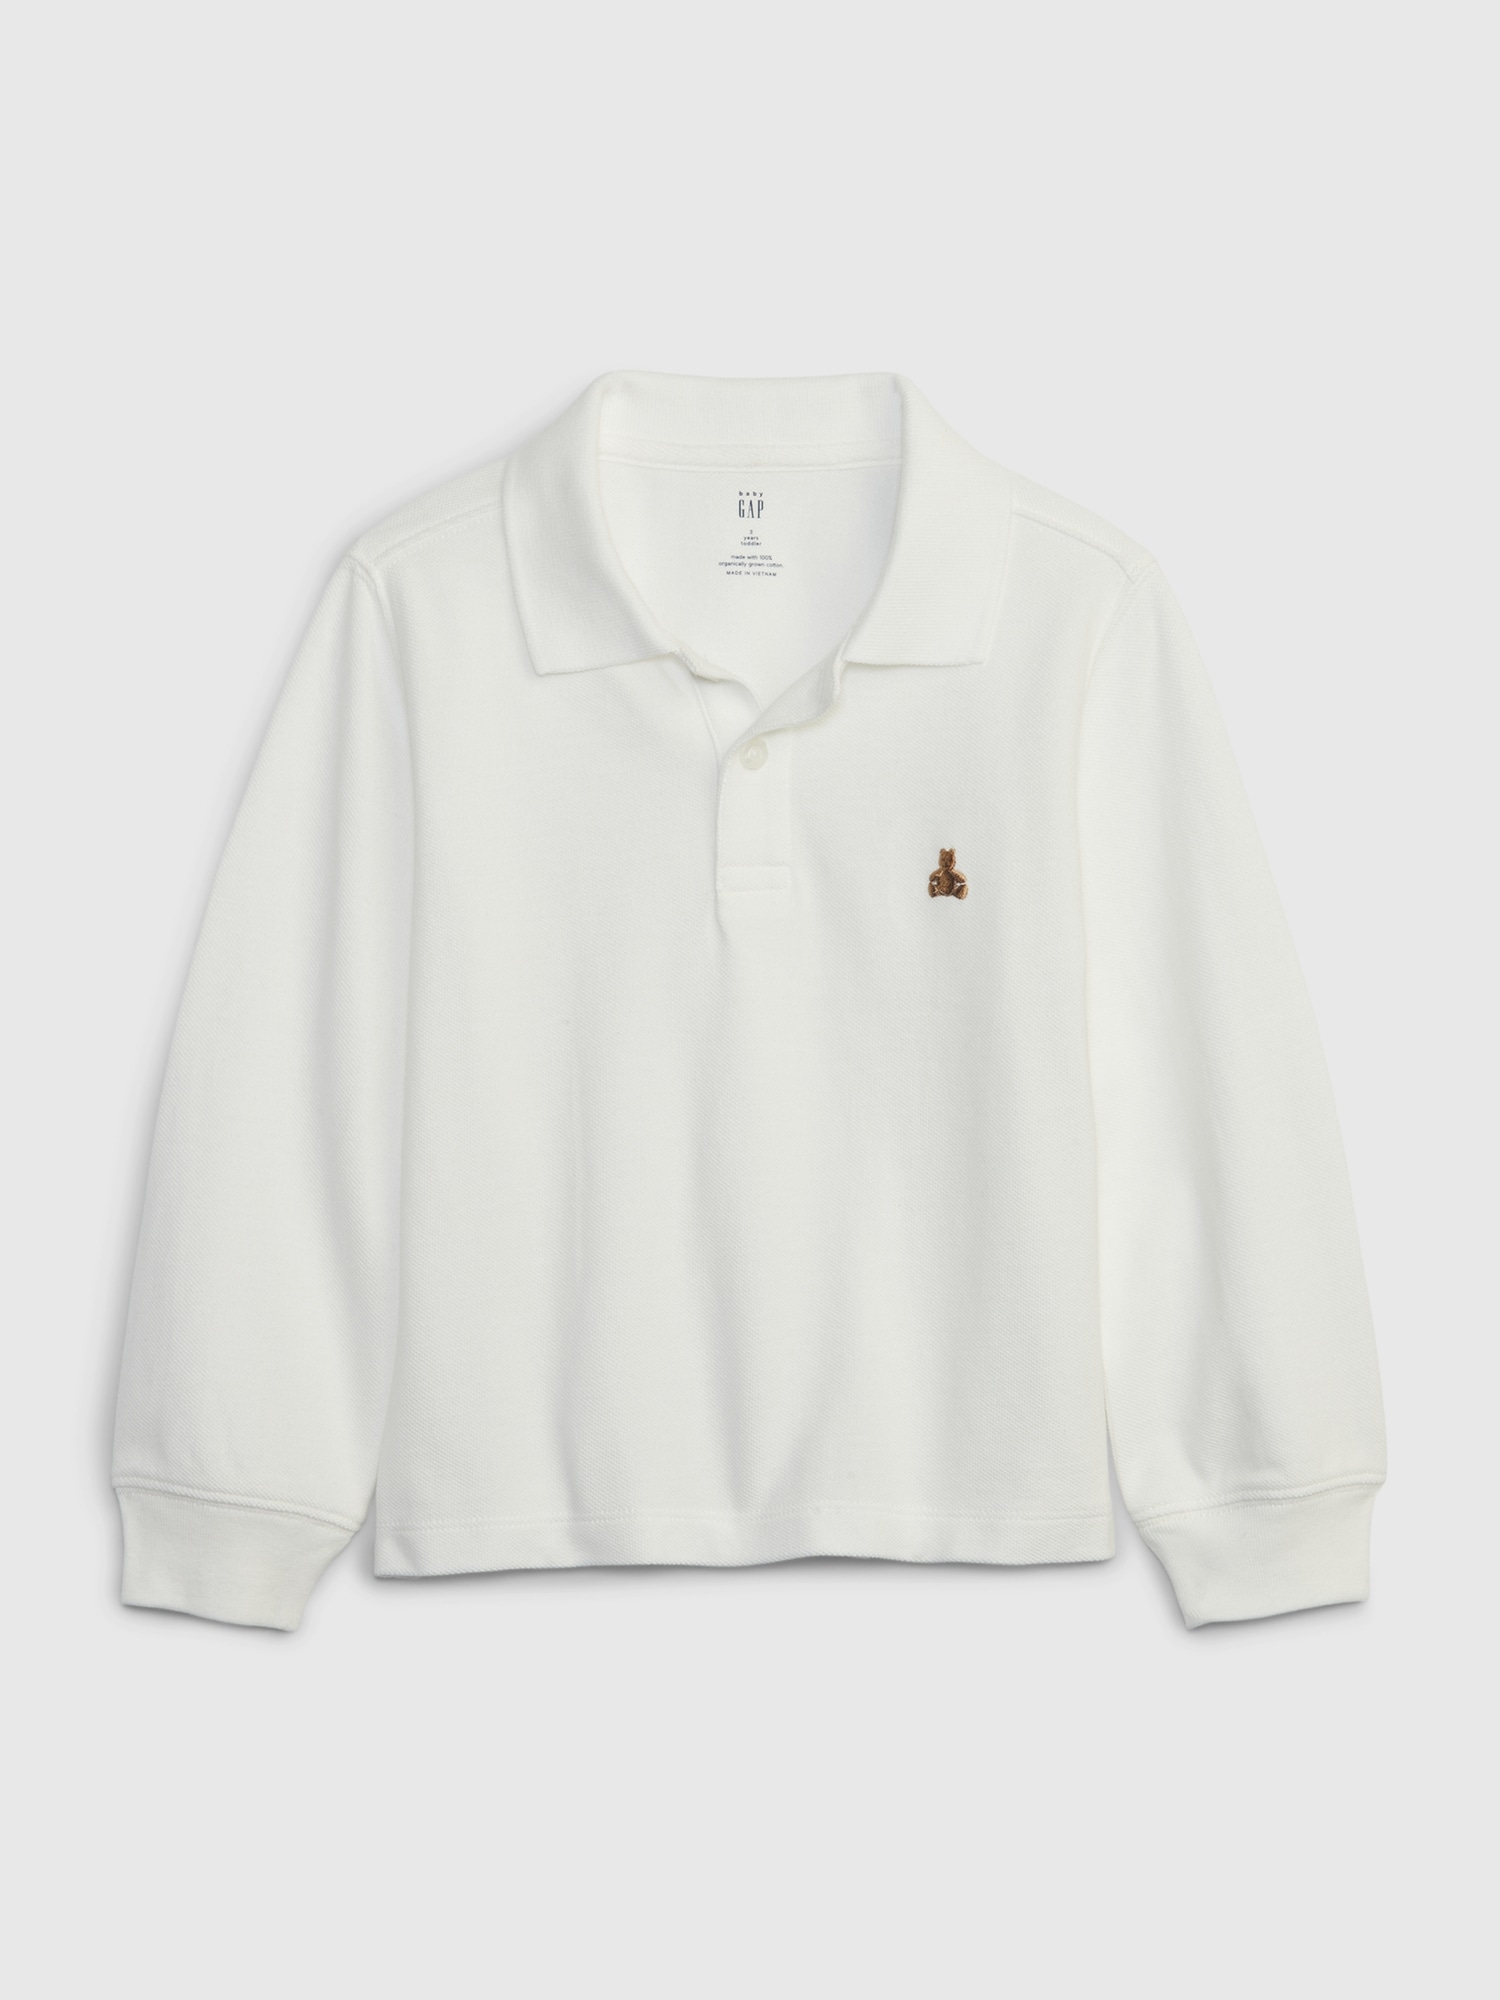 Gap Toddler Organic Cotton Pique Polo Shirt